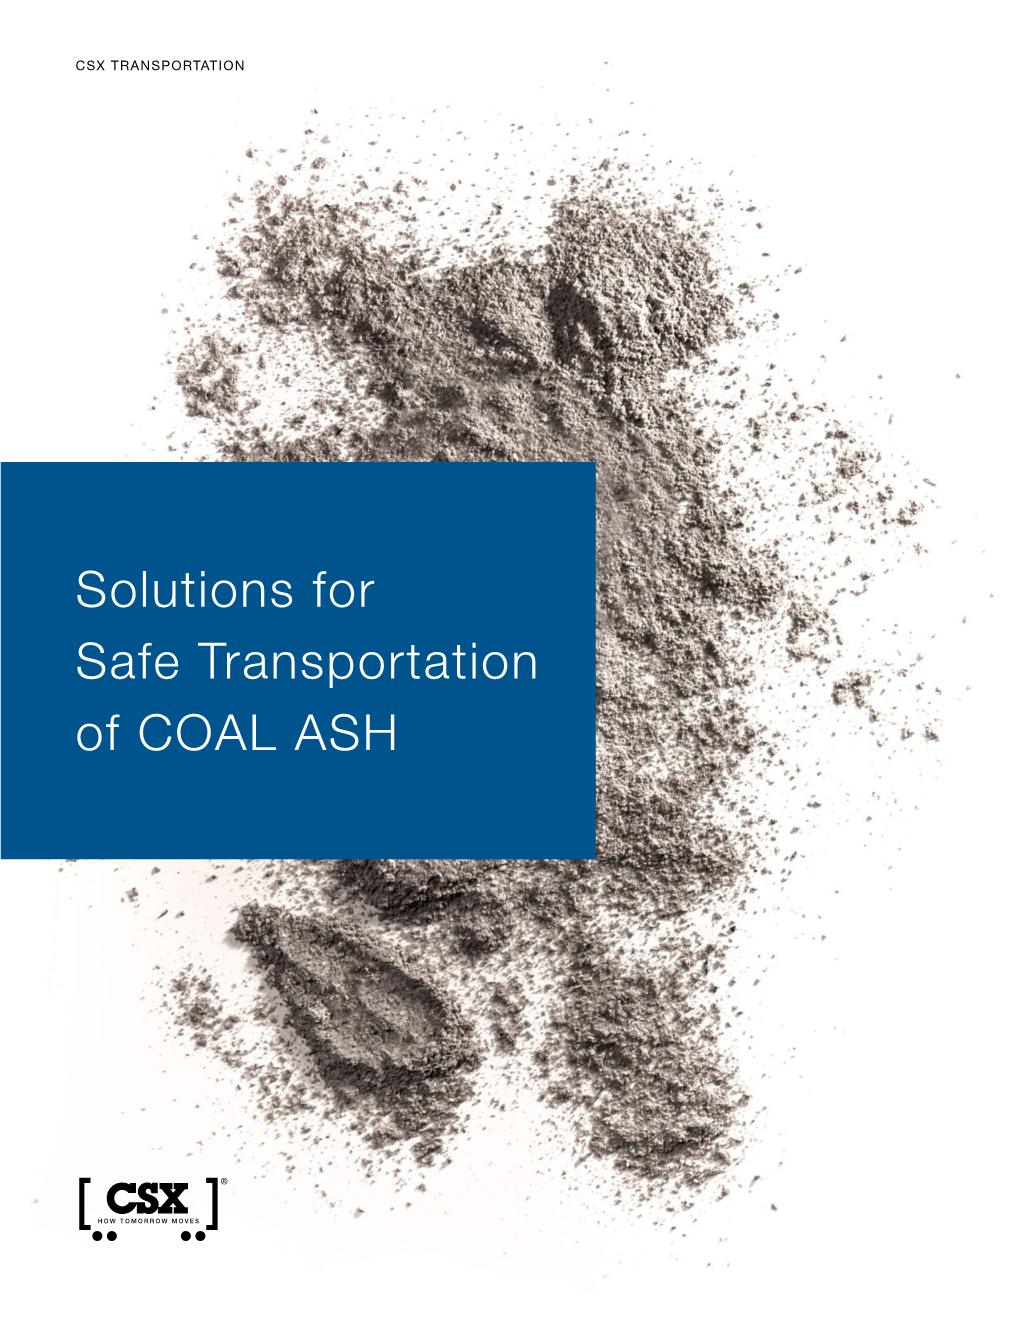 Solutions for Safe Transportation of COAL ASH CSX COAL ASH TRANSPORTATION